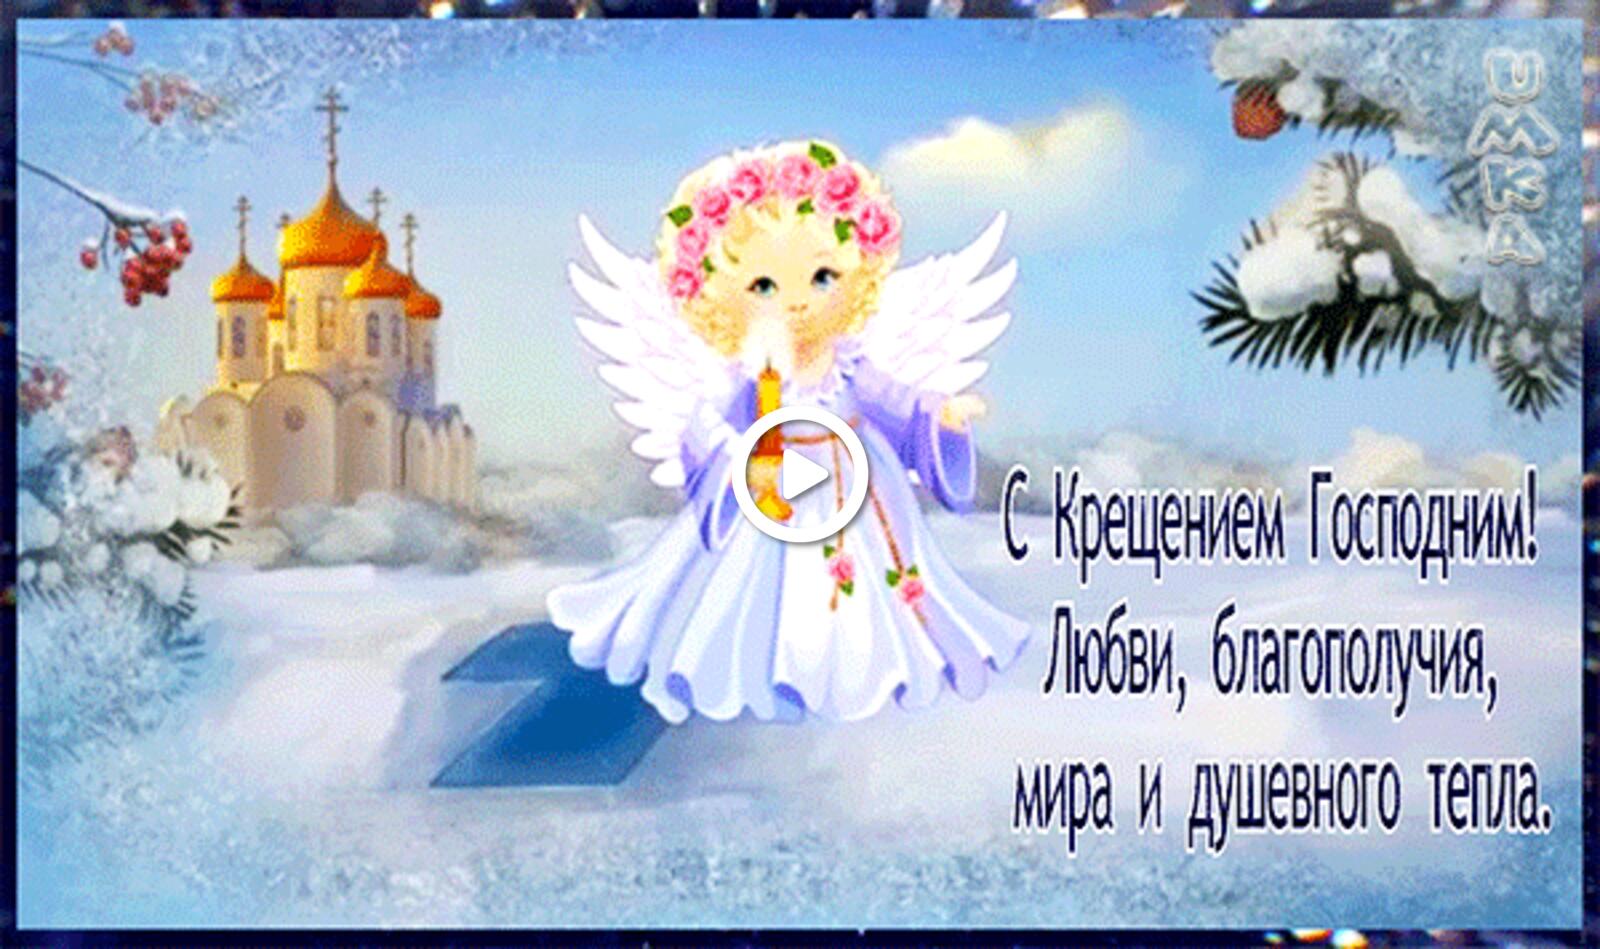 一张以耶稣受洗 节日 天使为主题的明信片